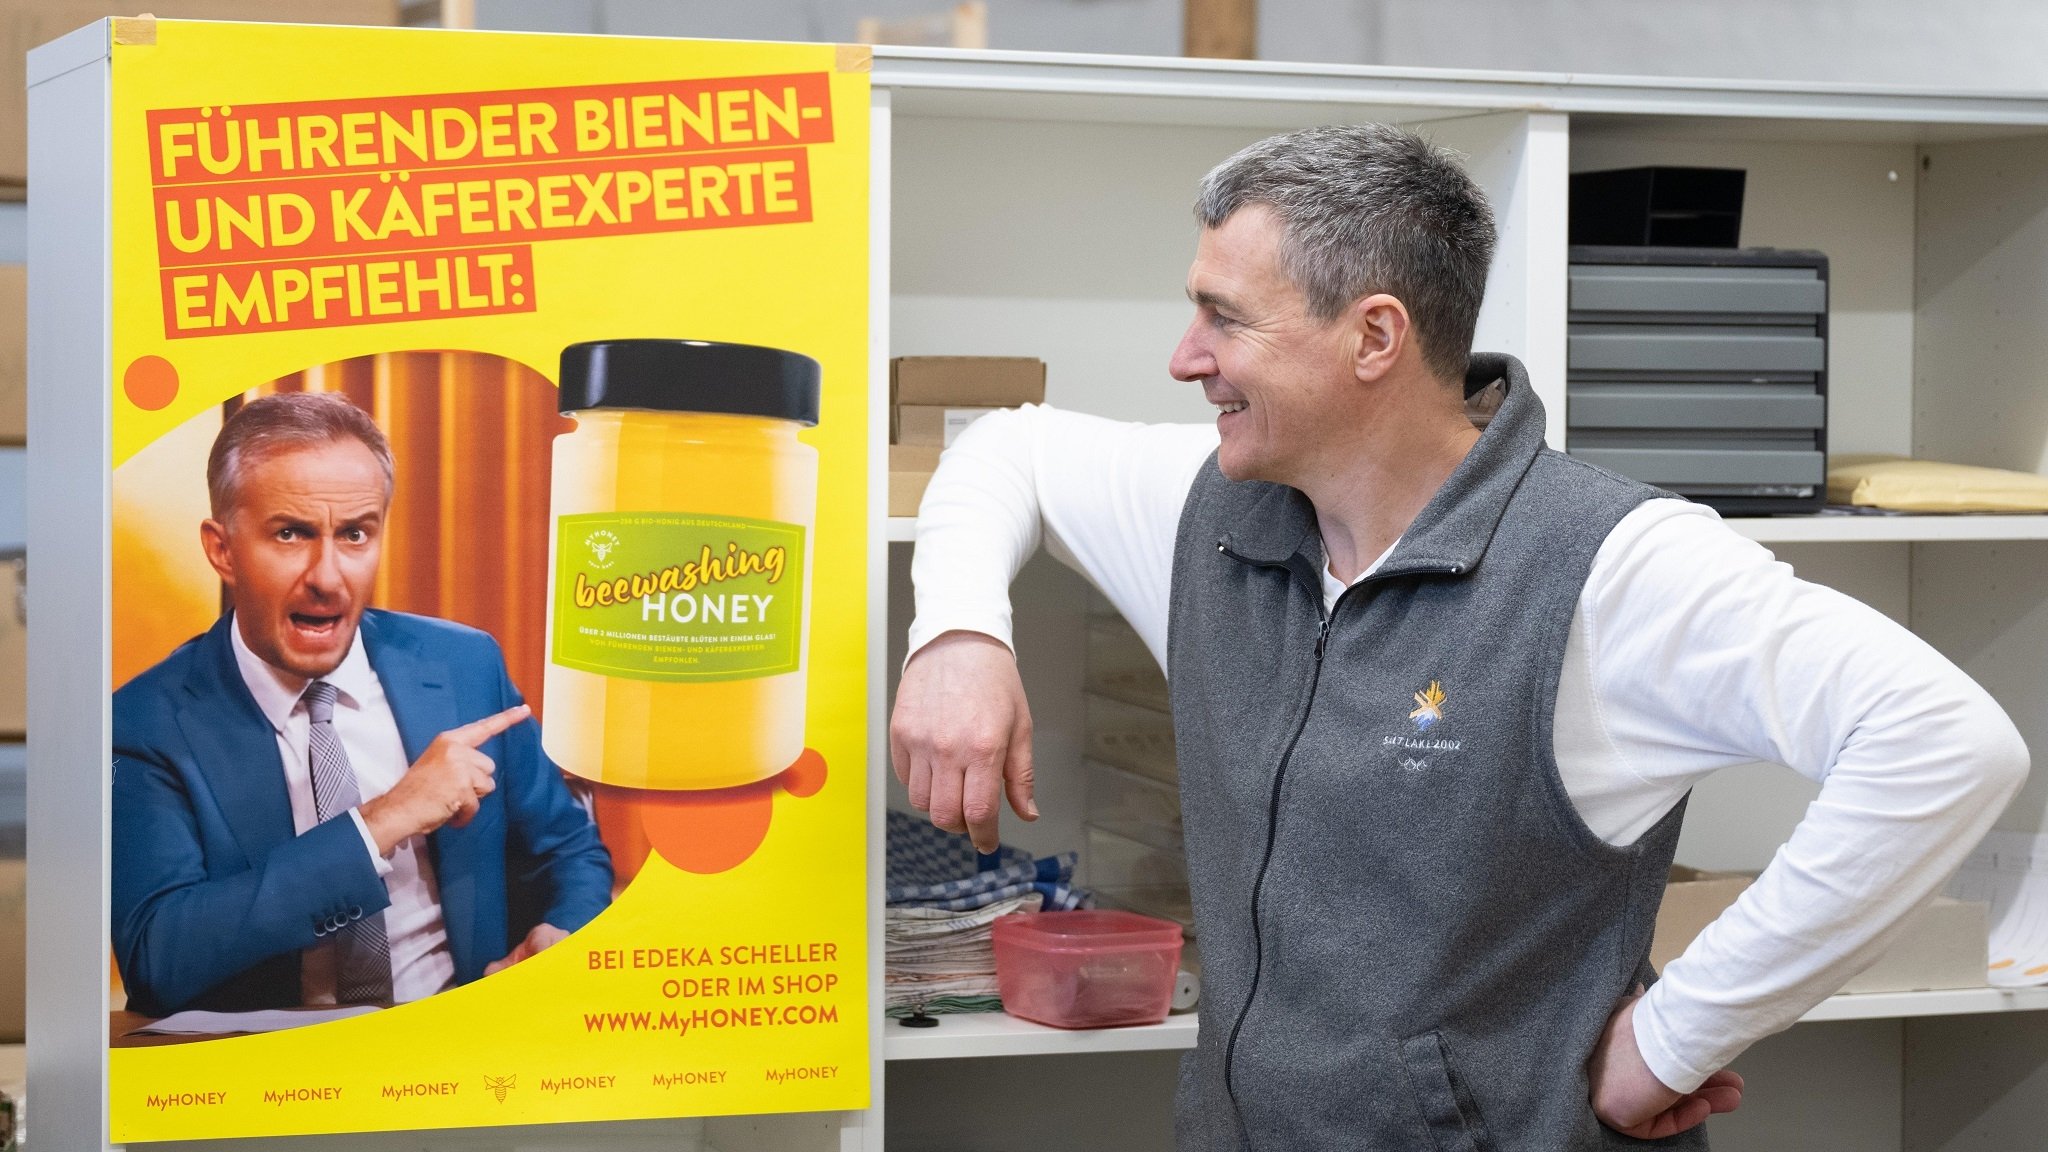 Satirische Werbung: Böhmermann als "führender Bienen- und Käferexperte"